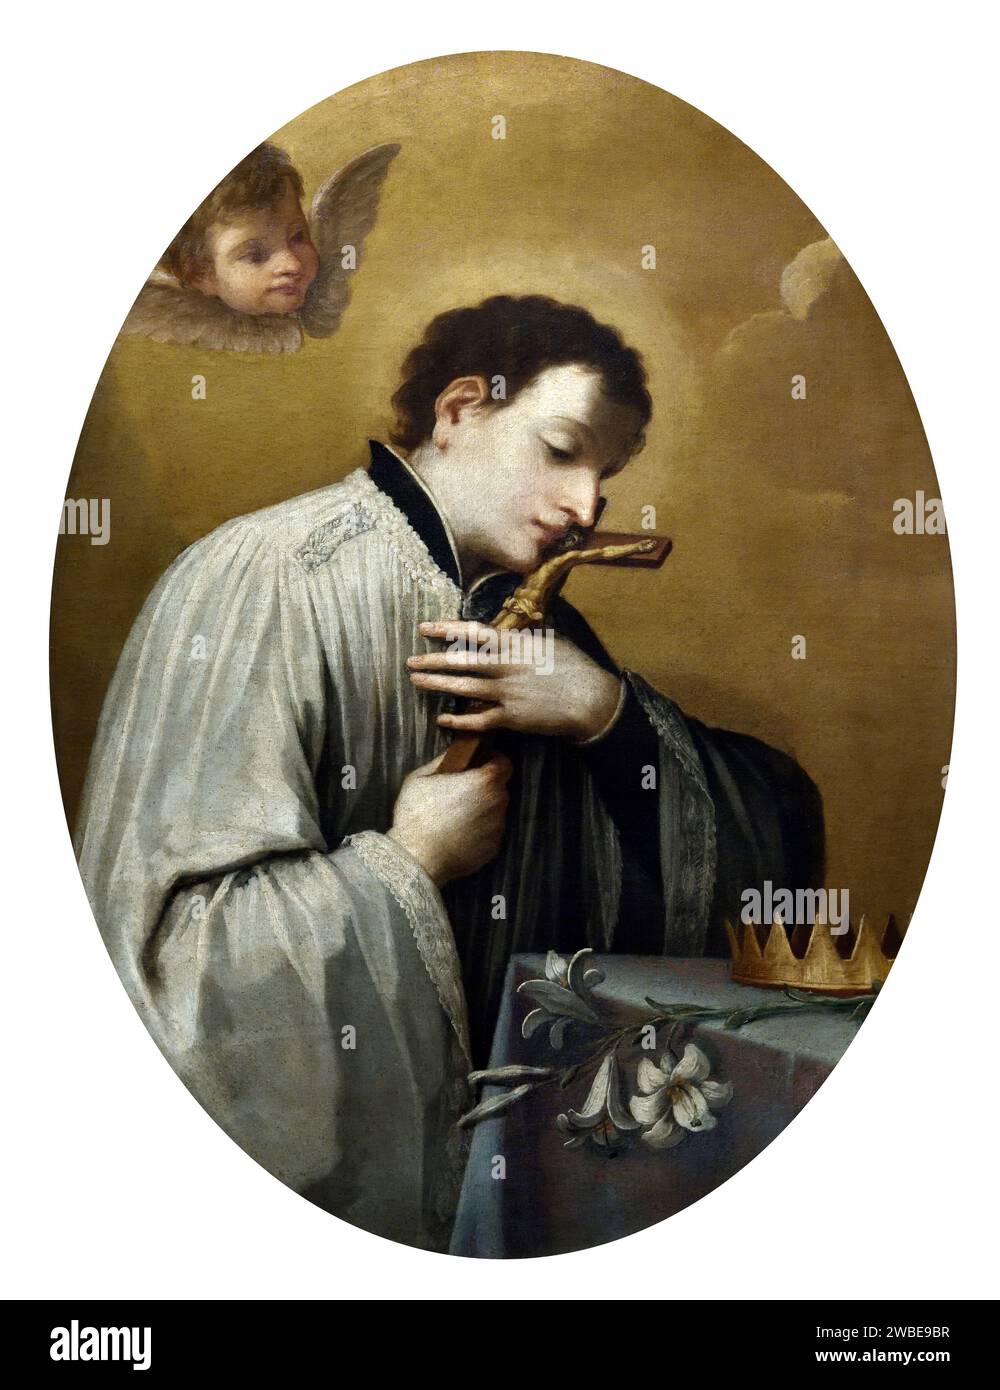 San Luigi Gonzaga - olio su tela - Girolamo Donnini - XVIII secolo - Correggio (re), Museo Civico il Correggio Foto Stock